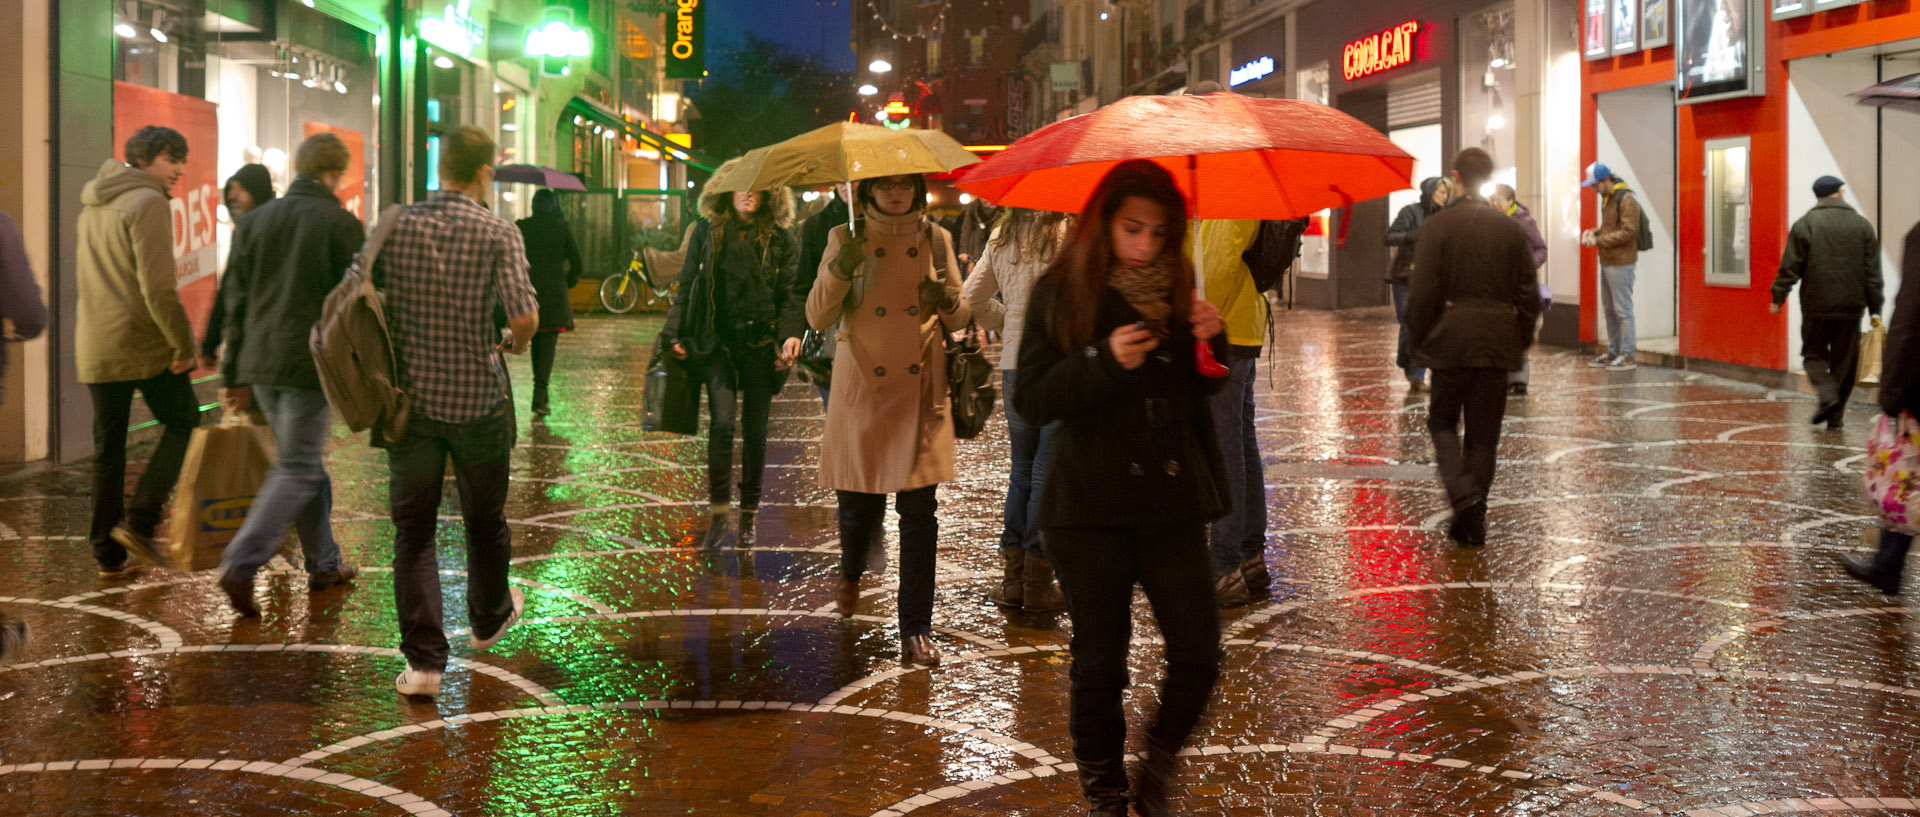 Passants sous la pluie, rue de Béthune, à Lille.